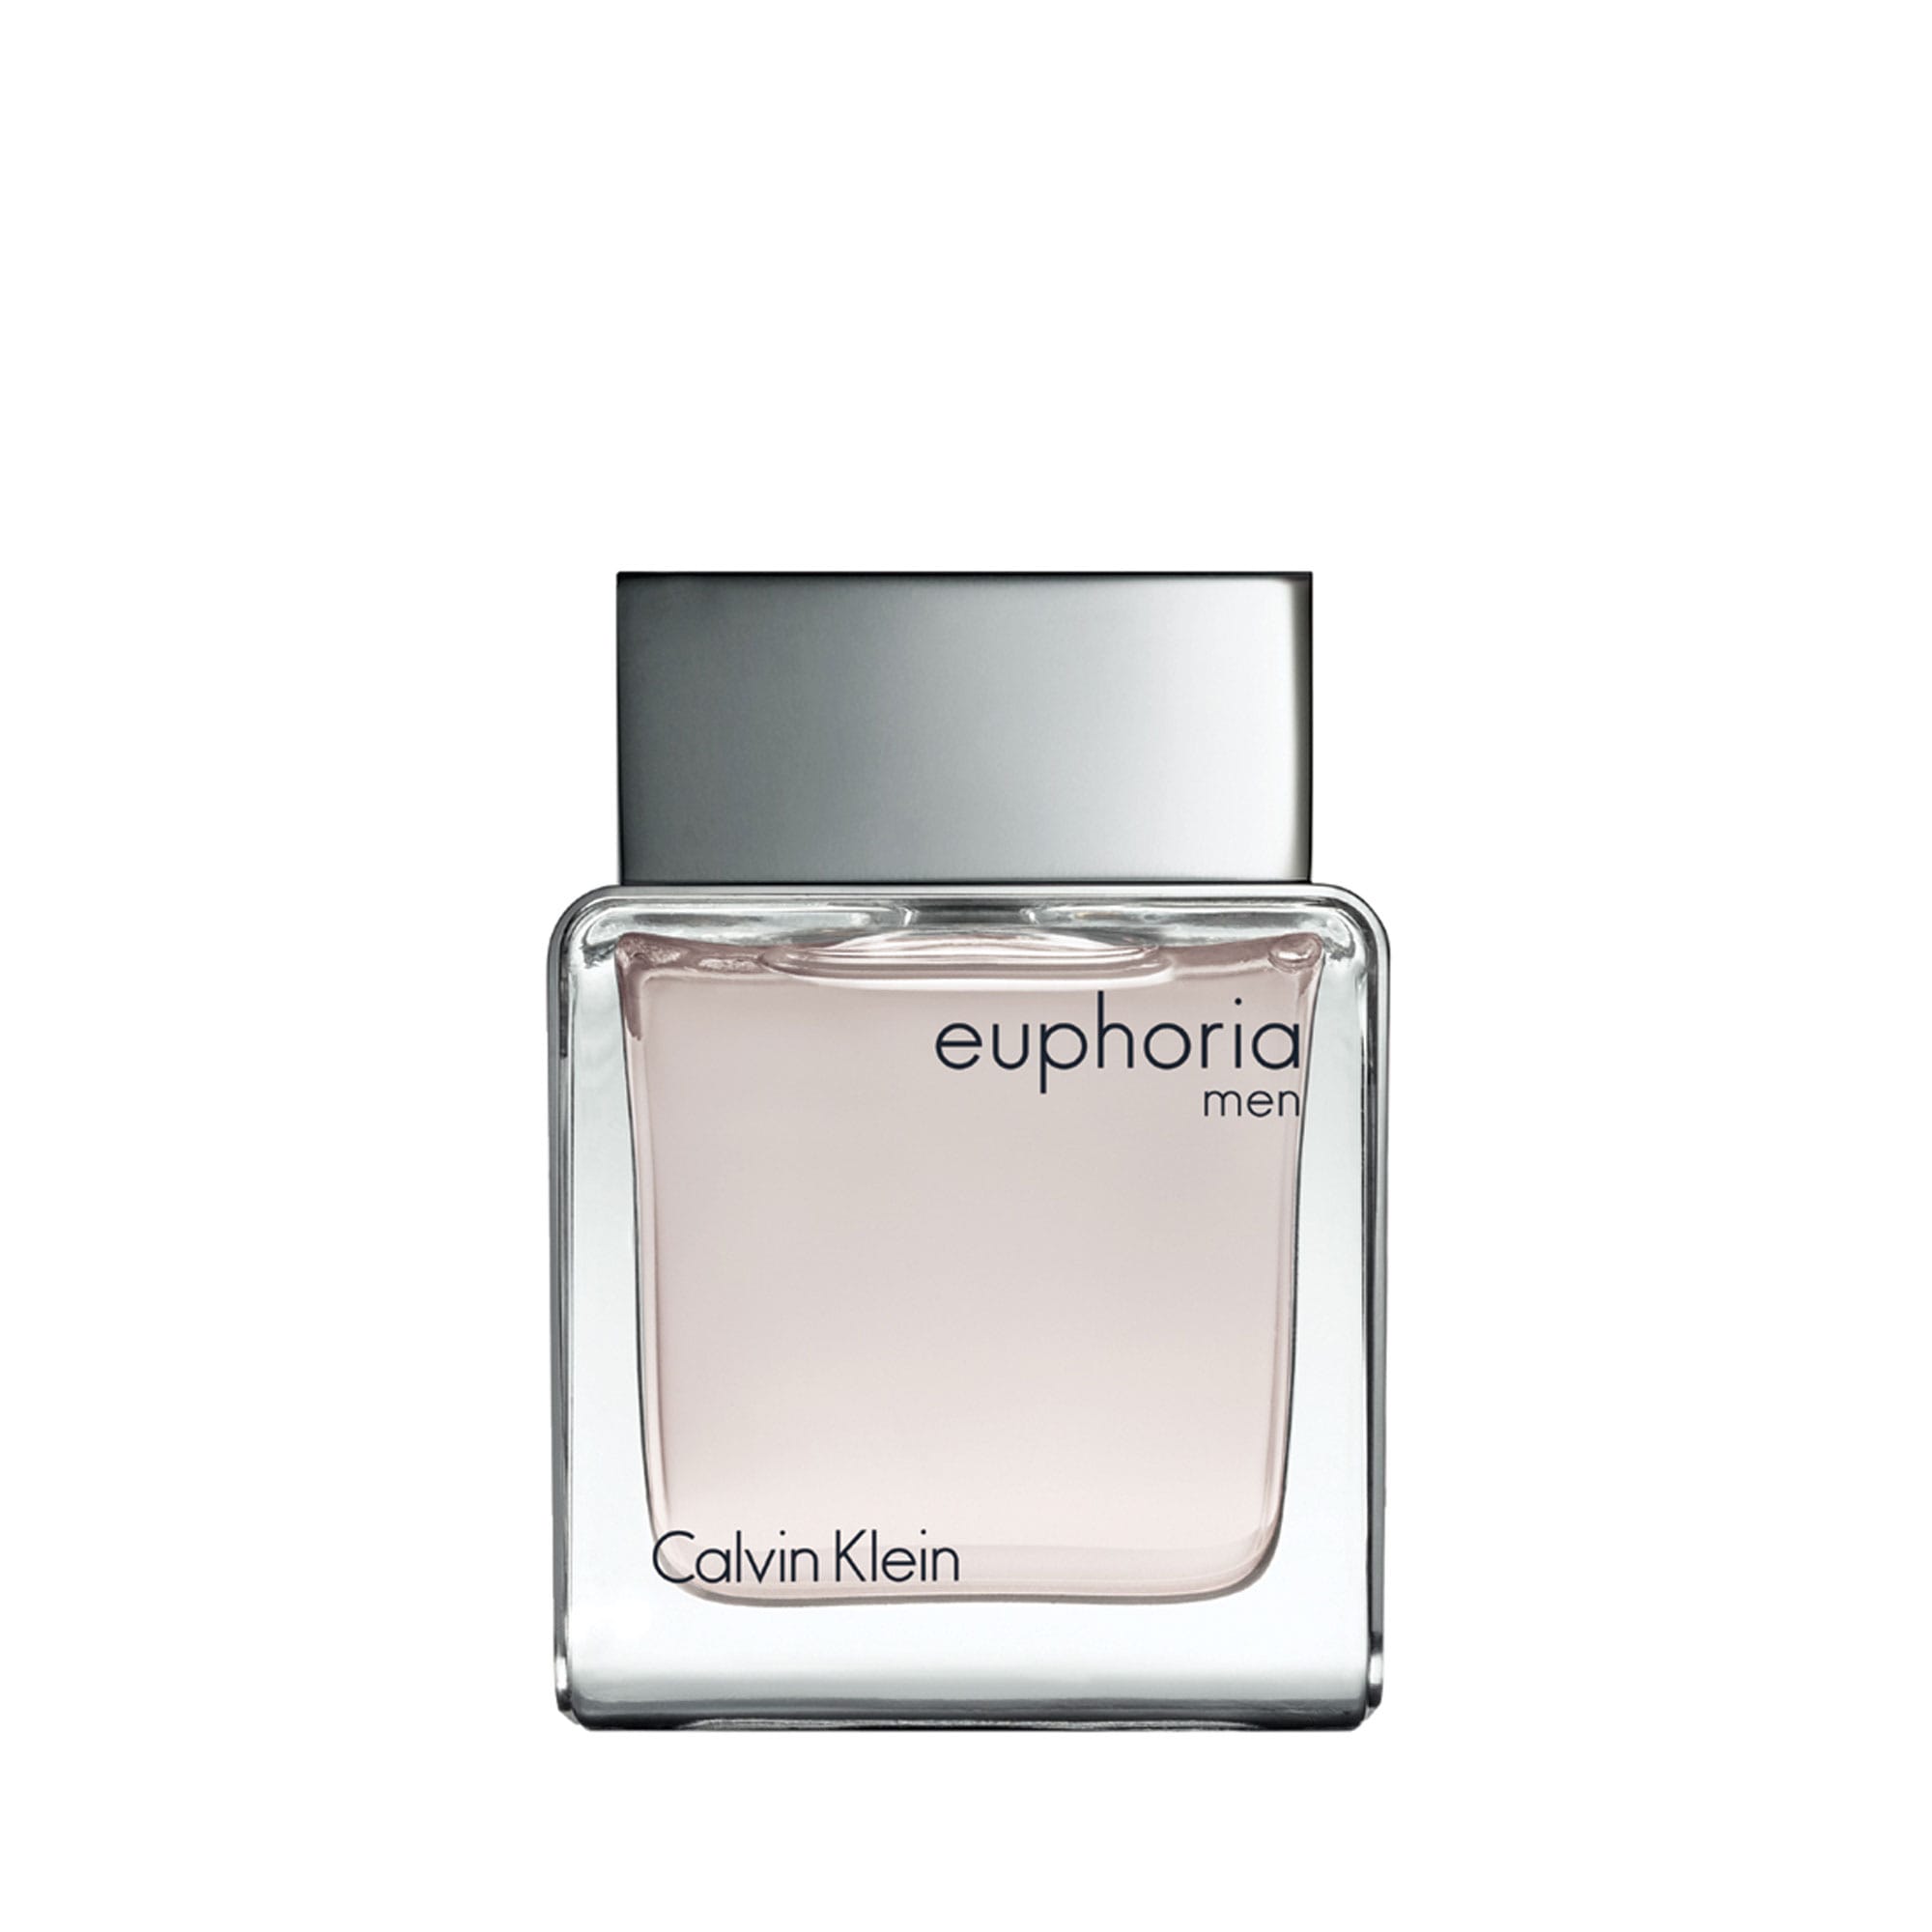 Euphoria Men EdT från Calvin Klein